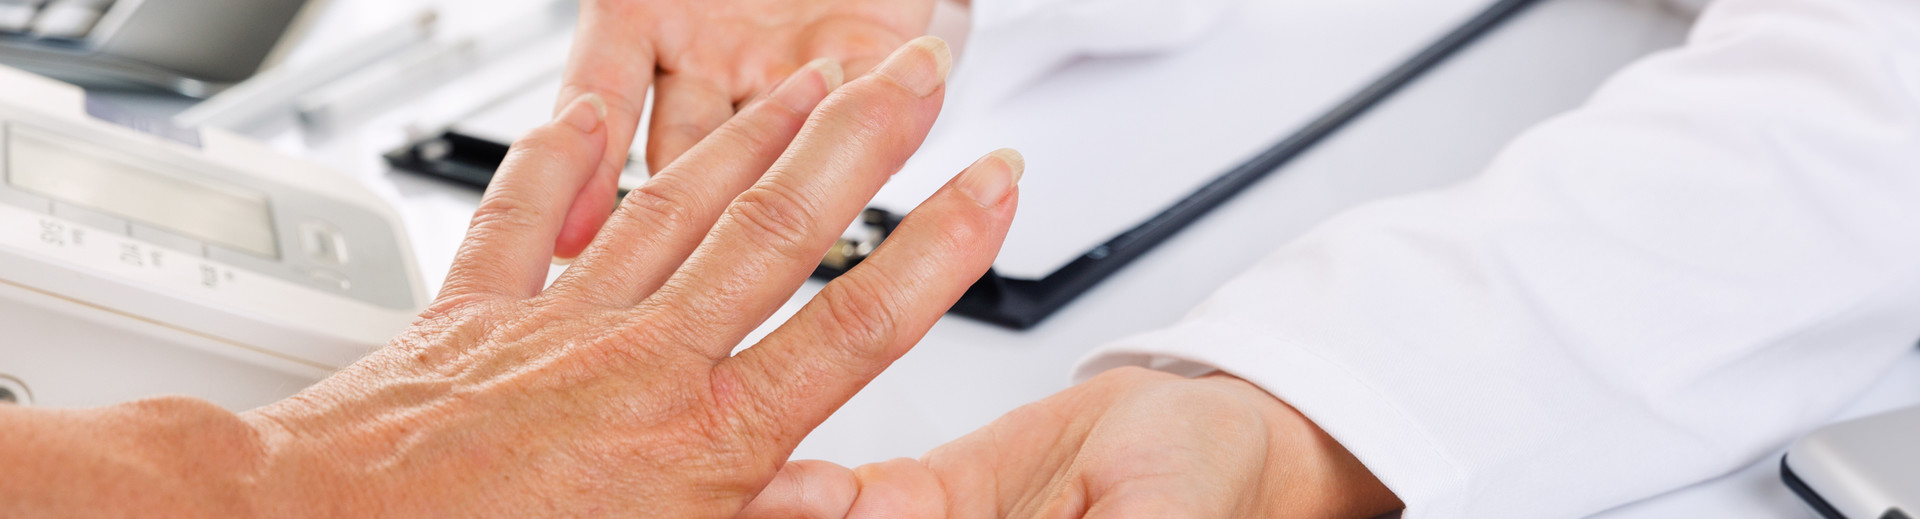 Ärztin untersucht Hand und Finger von Patientin